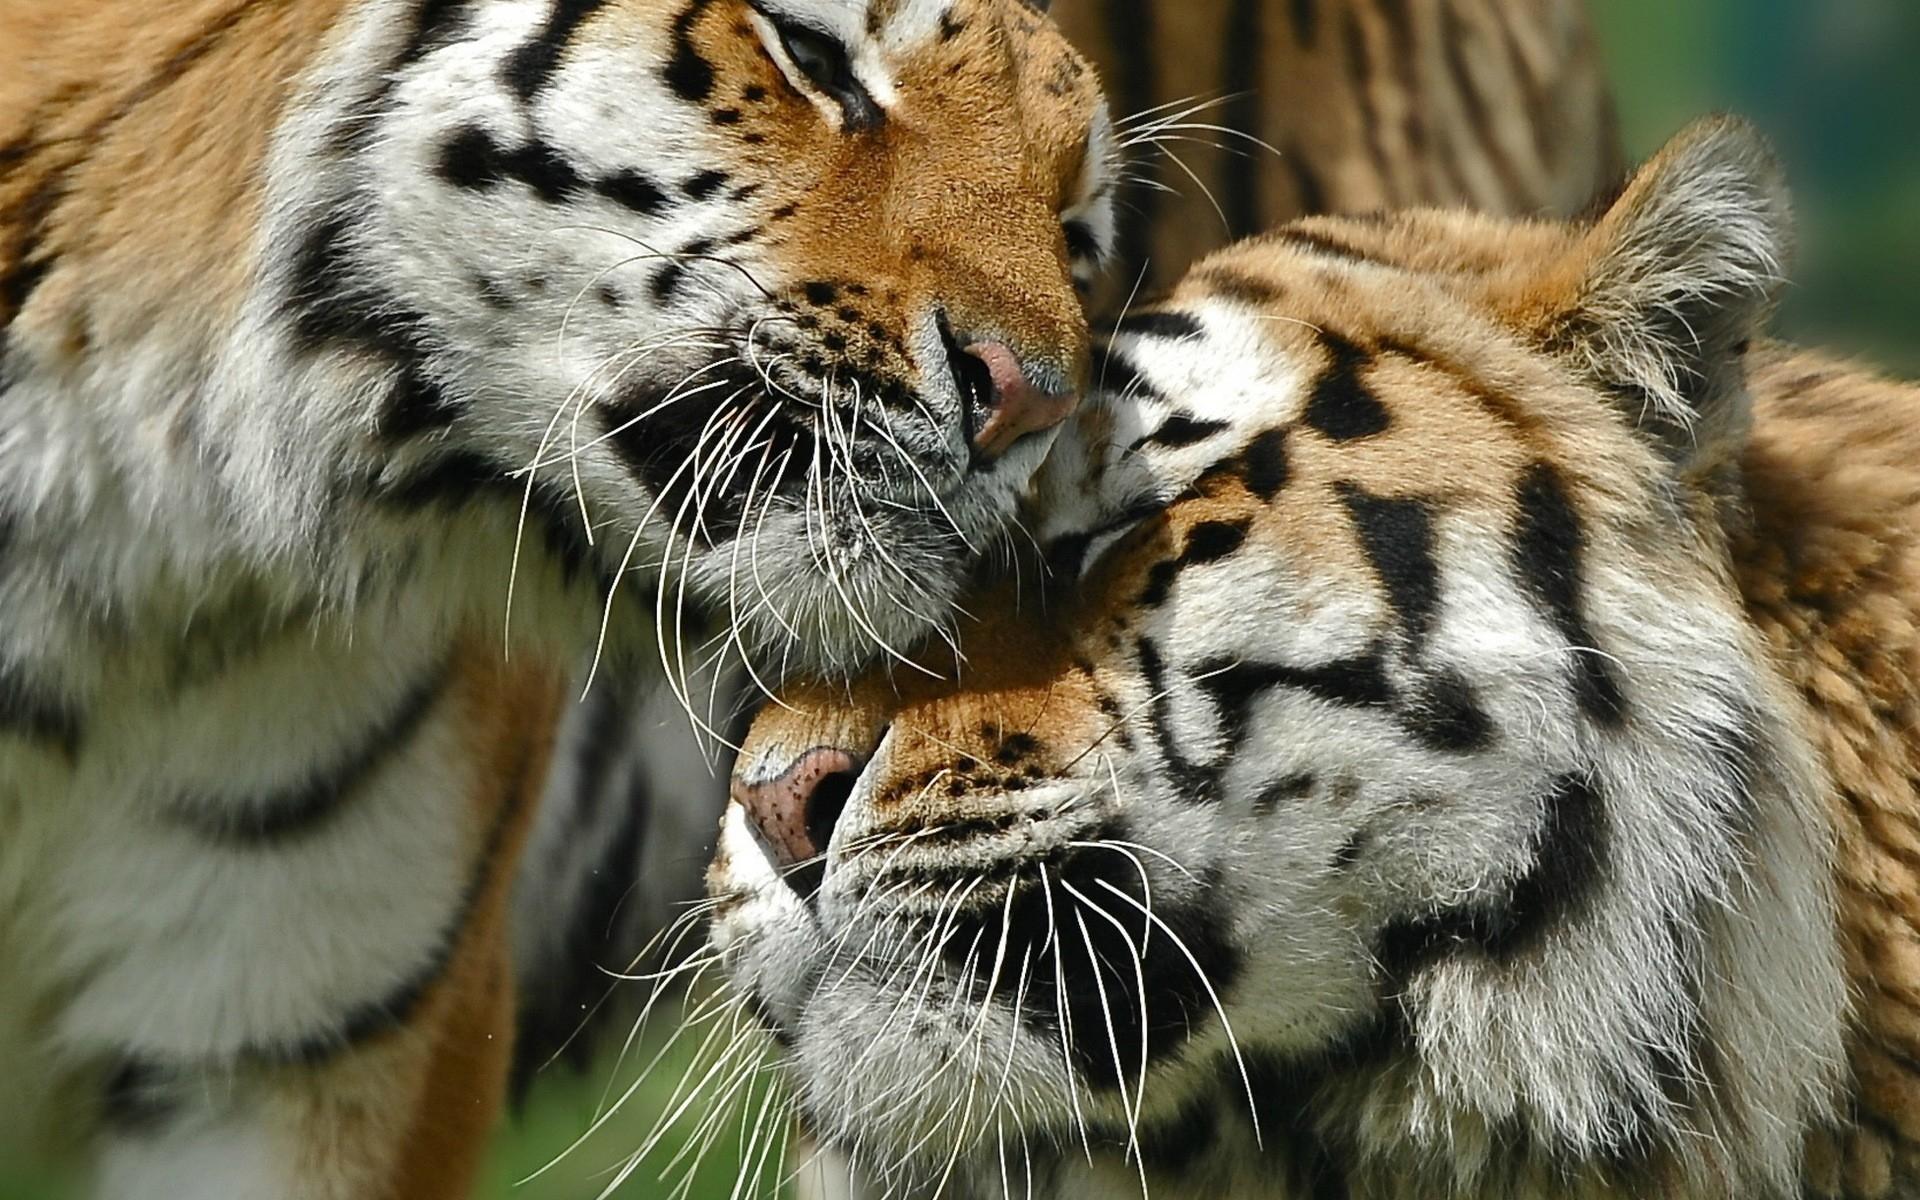 Bons tigres